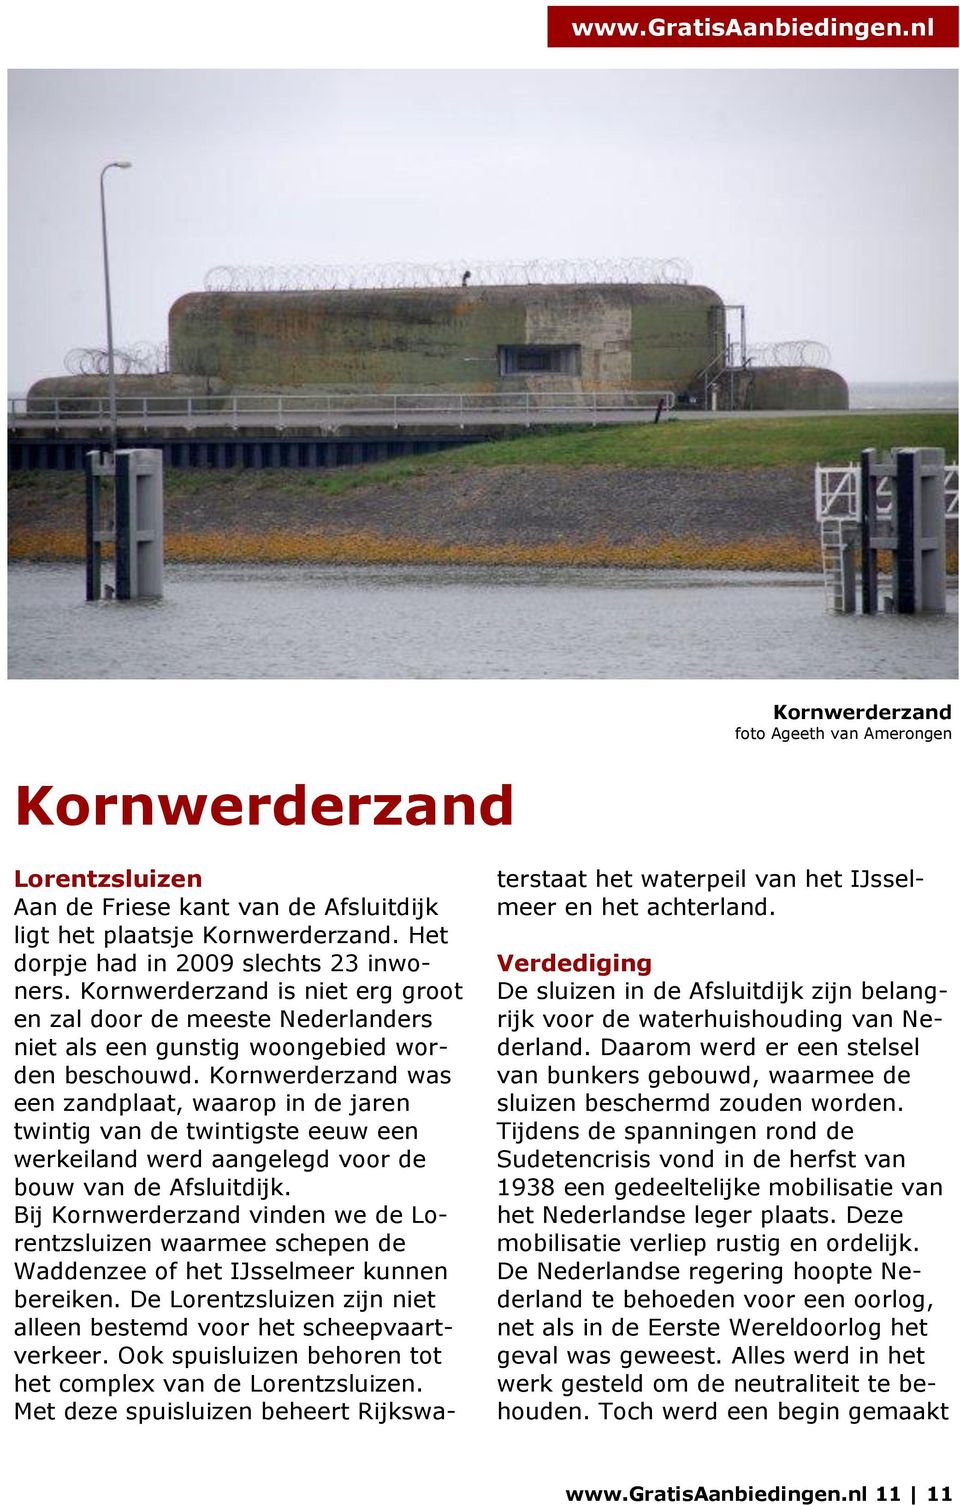 Kornwerderzand was een zandplaat, waarop in de jaren twintig van de twintigste eeuw een werkeiland werd aangelegd voor de bouw van de Afsluitdijk.